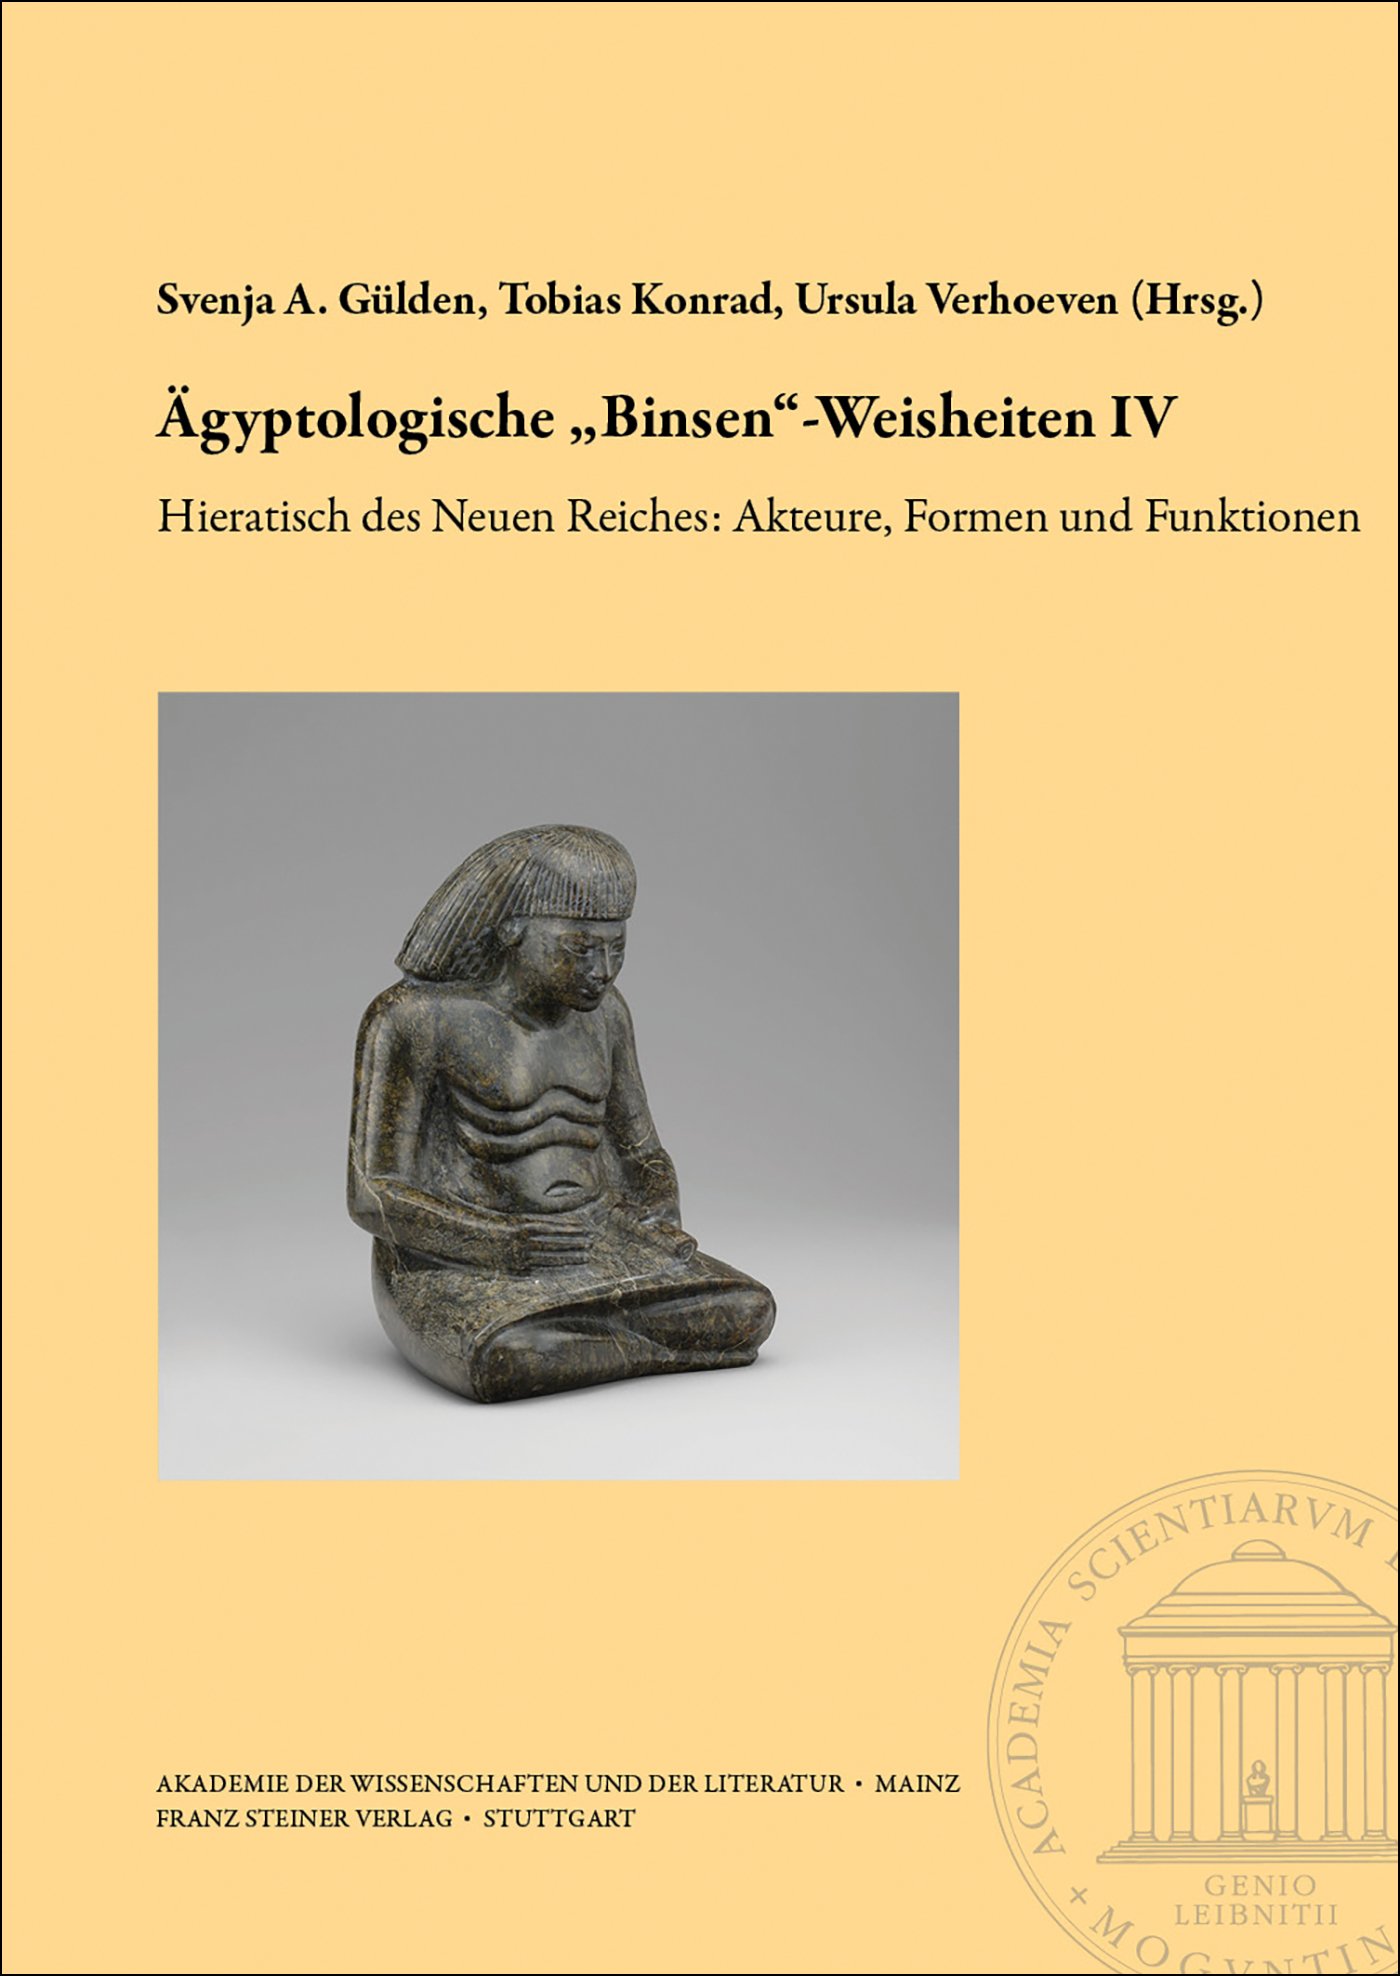 Ägyptologische „Binsen“-Weisheiten IV. Hieratisch des Neuen Reiches: Akteure, Formen und Funktionen